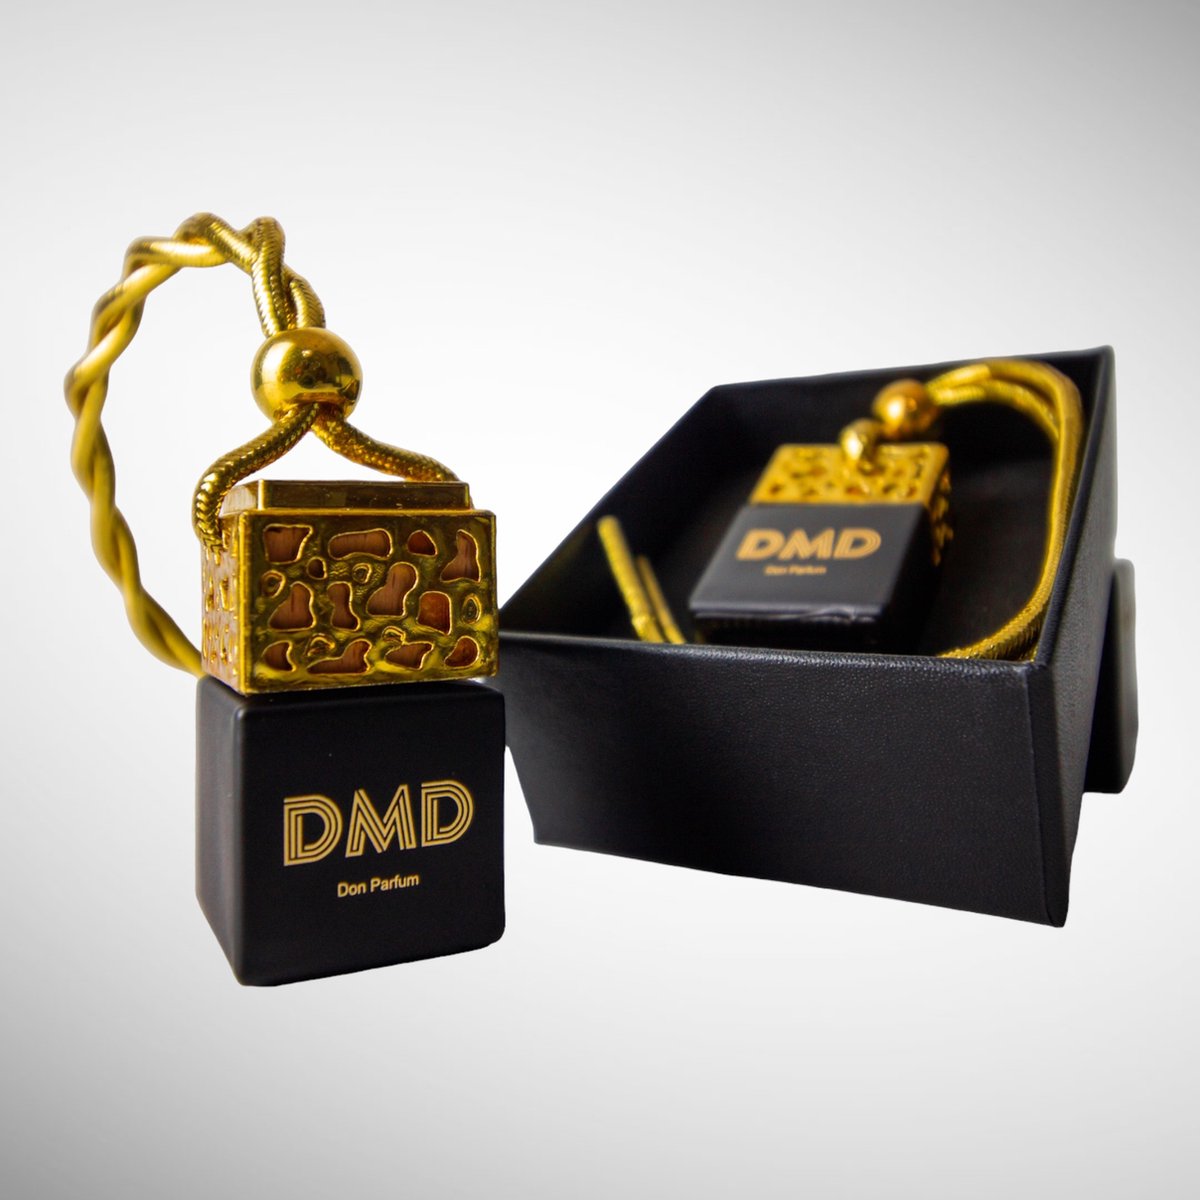 Don Parfum Golden Edition Autoparfum - Luchtverfrisser - Aventus